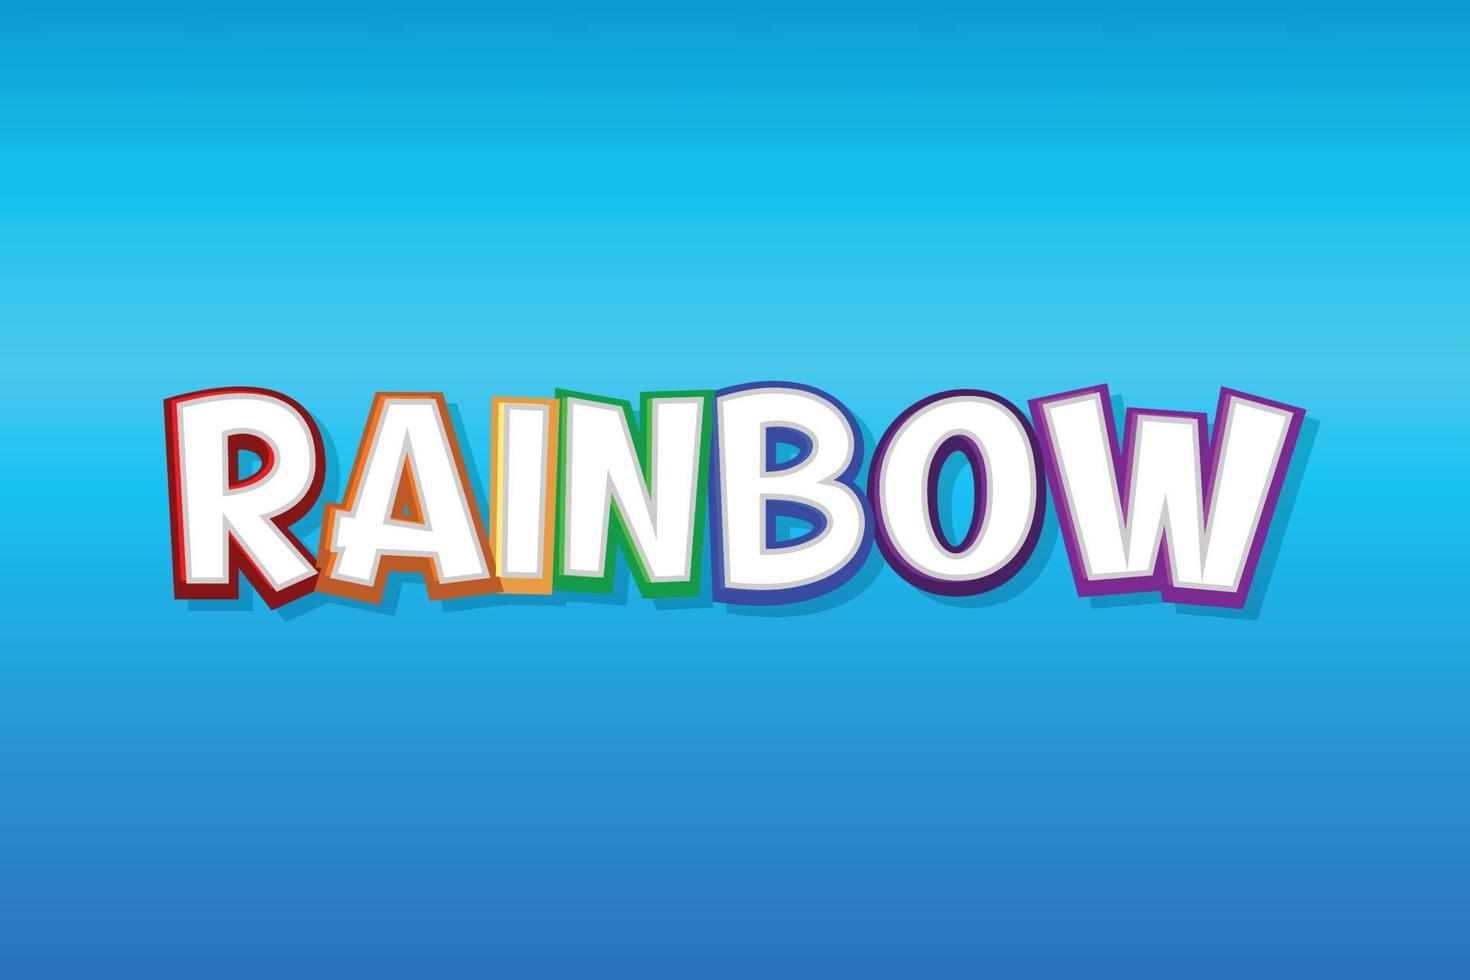 Rainbow Cartoon Style Text vector